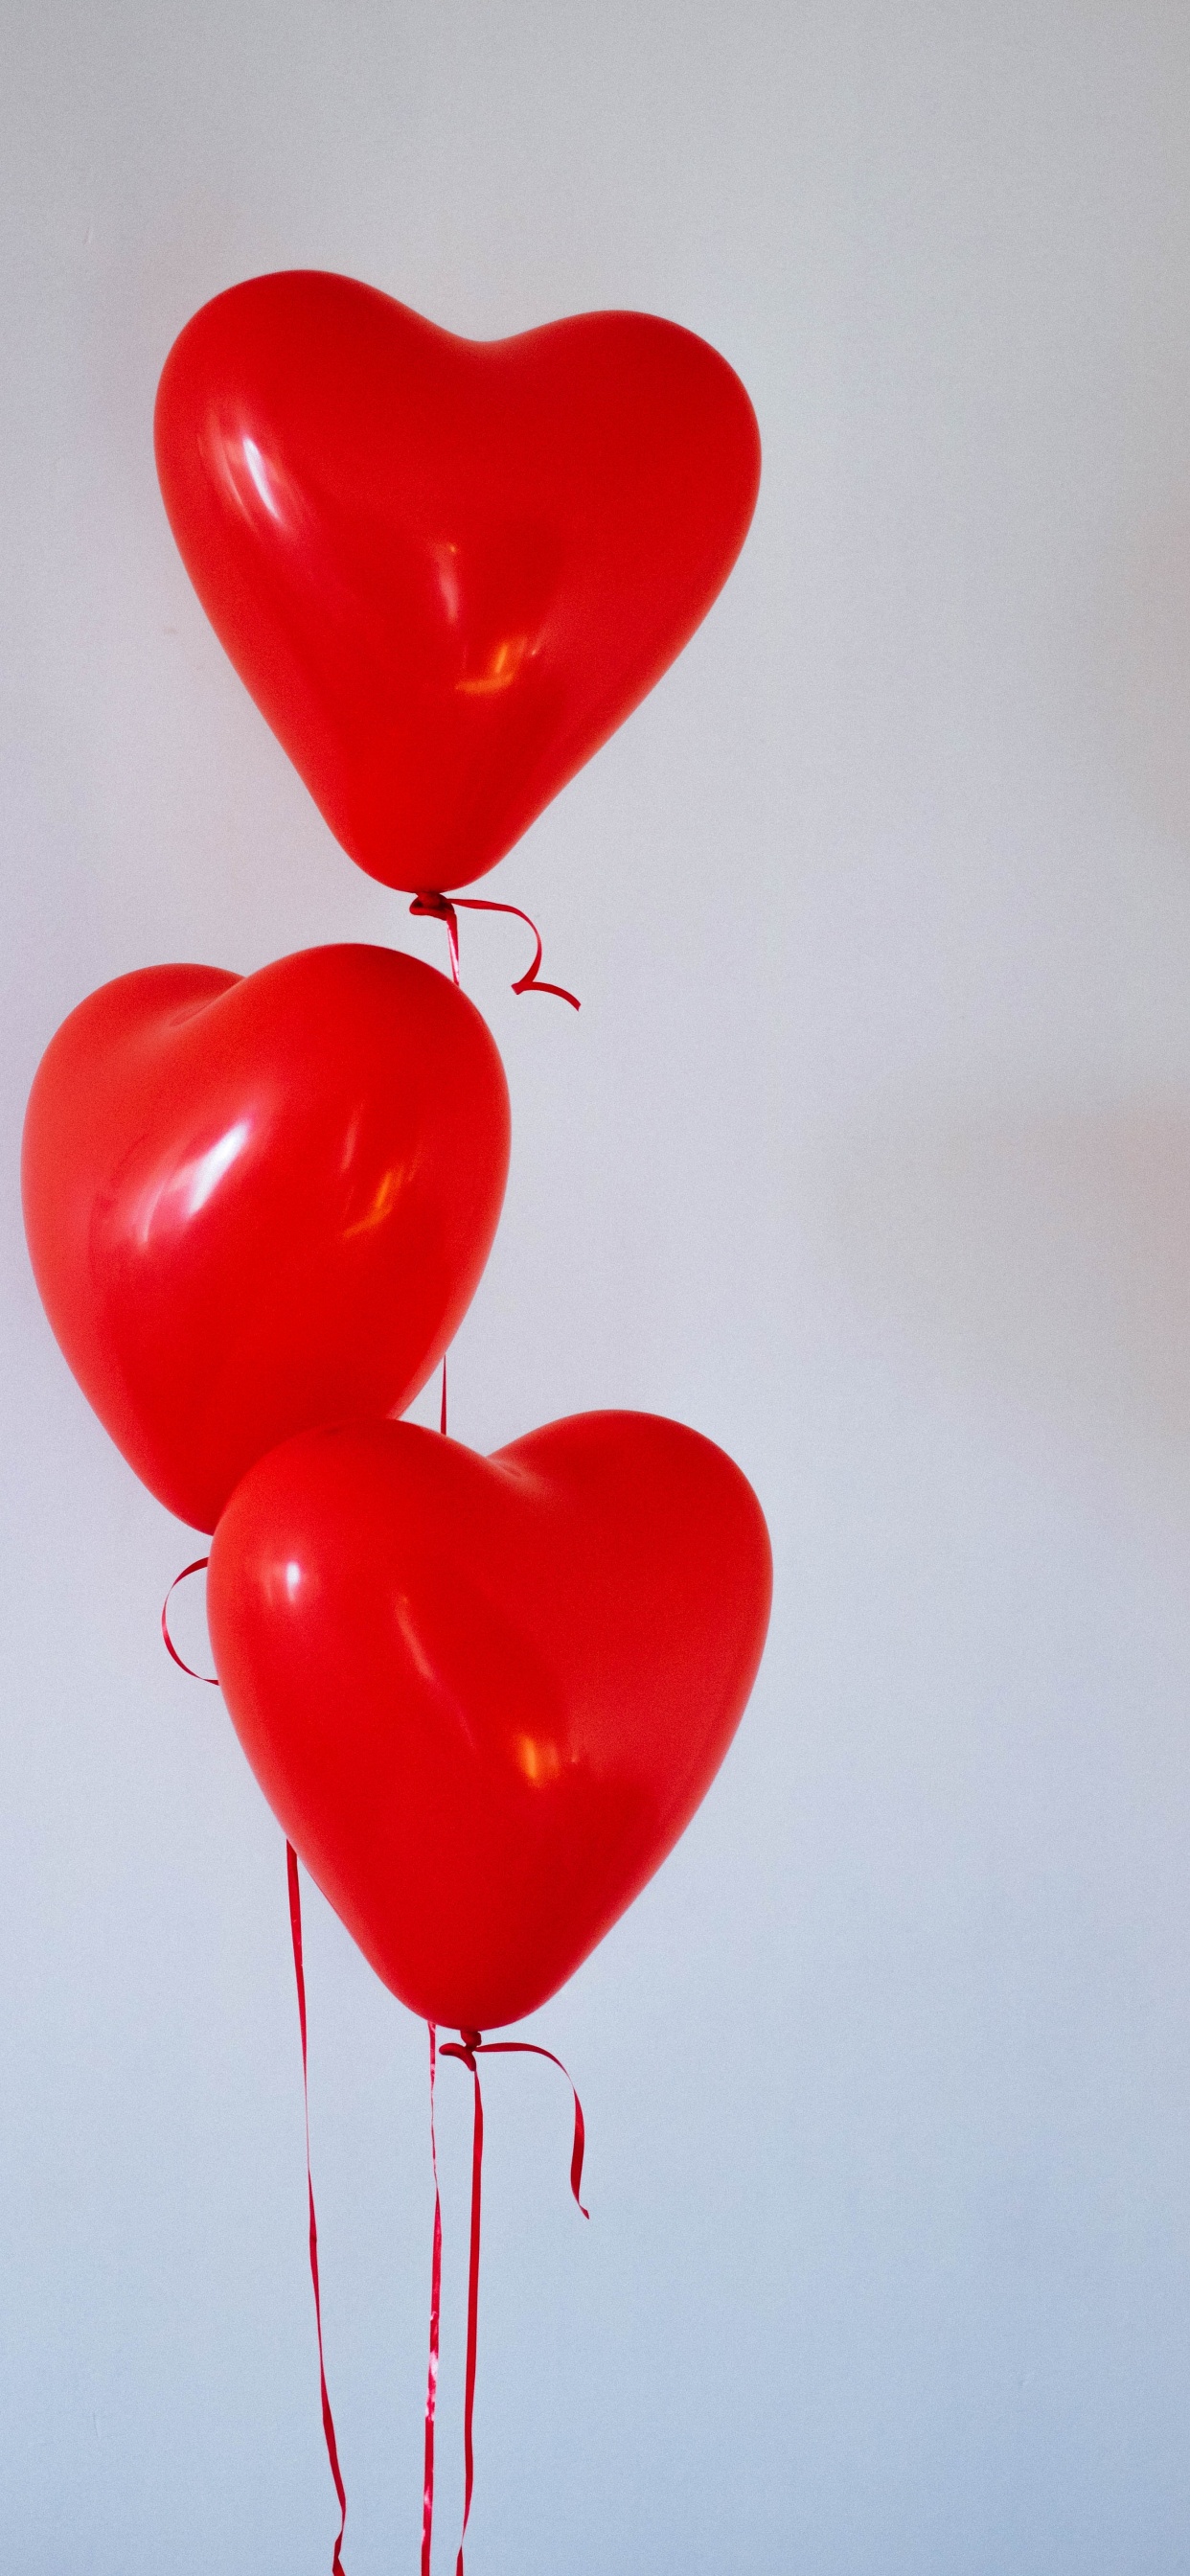 Ballon, Valentines Tag, Herzen, Organ, Liebe. Wallpaper in 1242x2688 Resolution